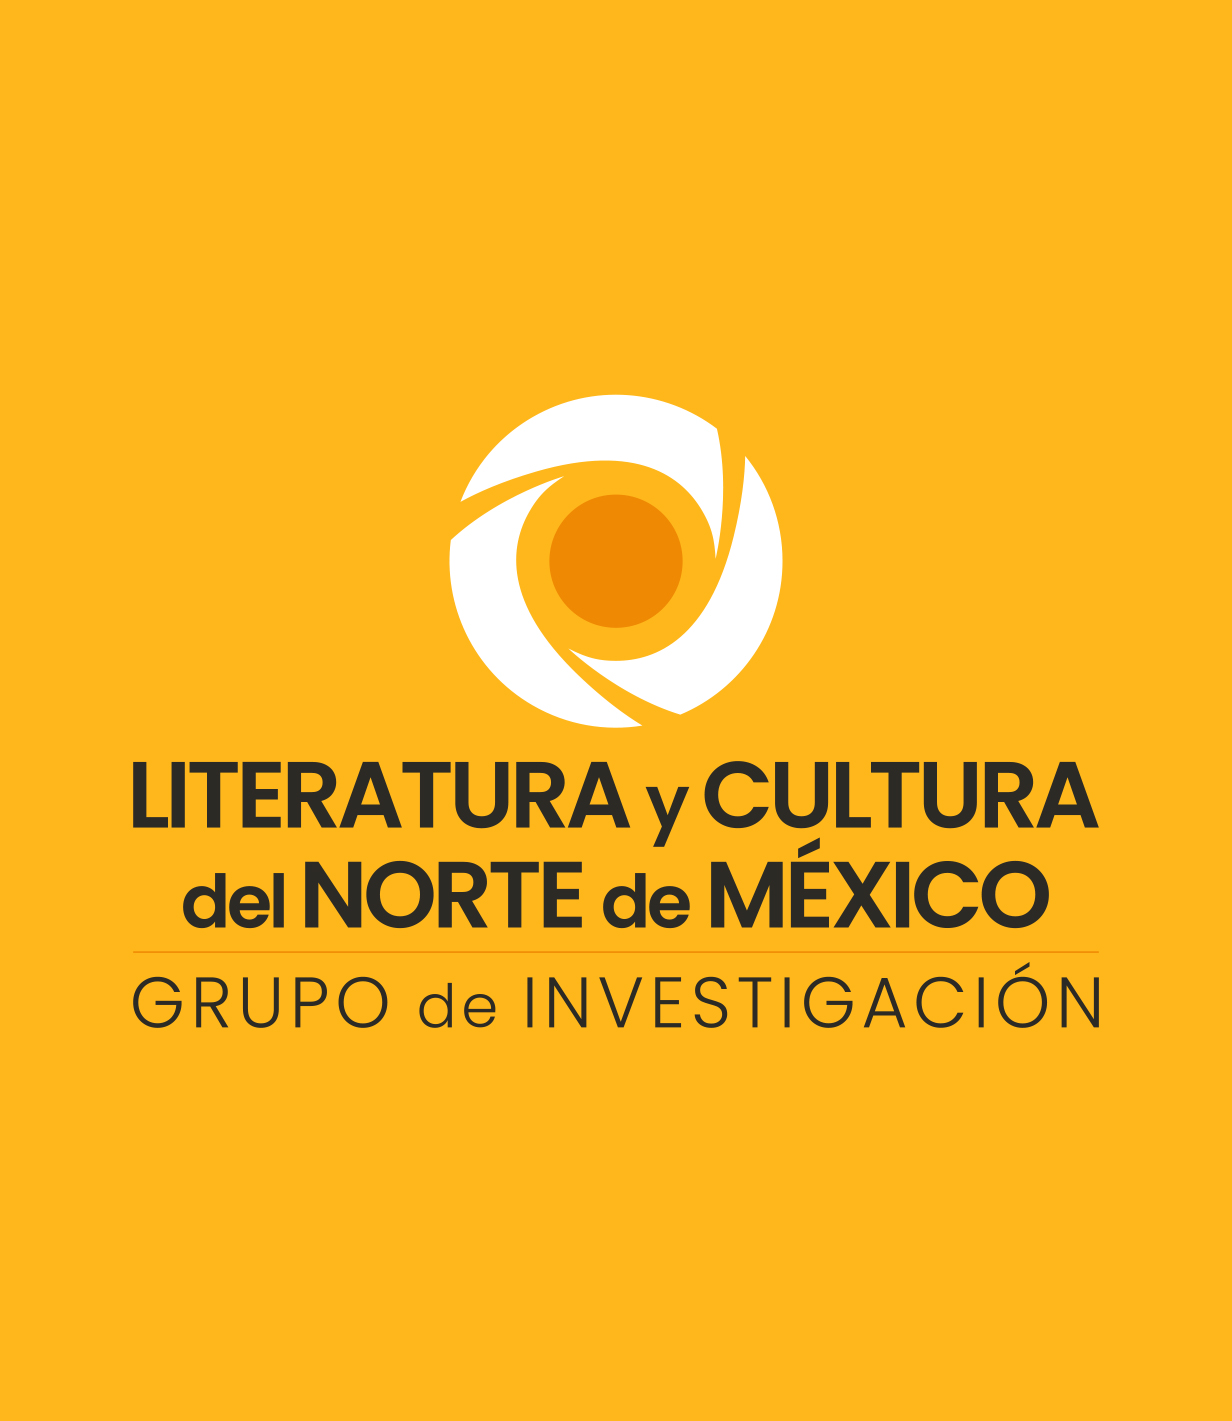 Académica chilena pronuncia conferencia en la FFyL